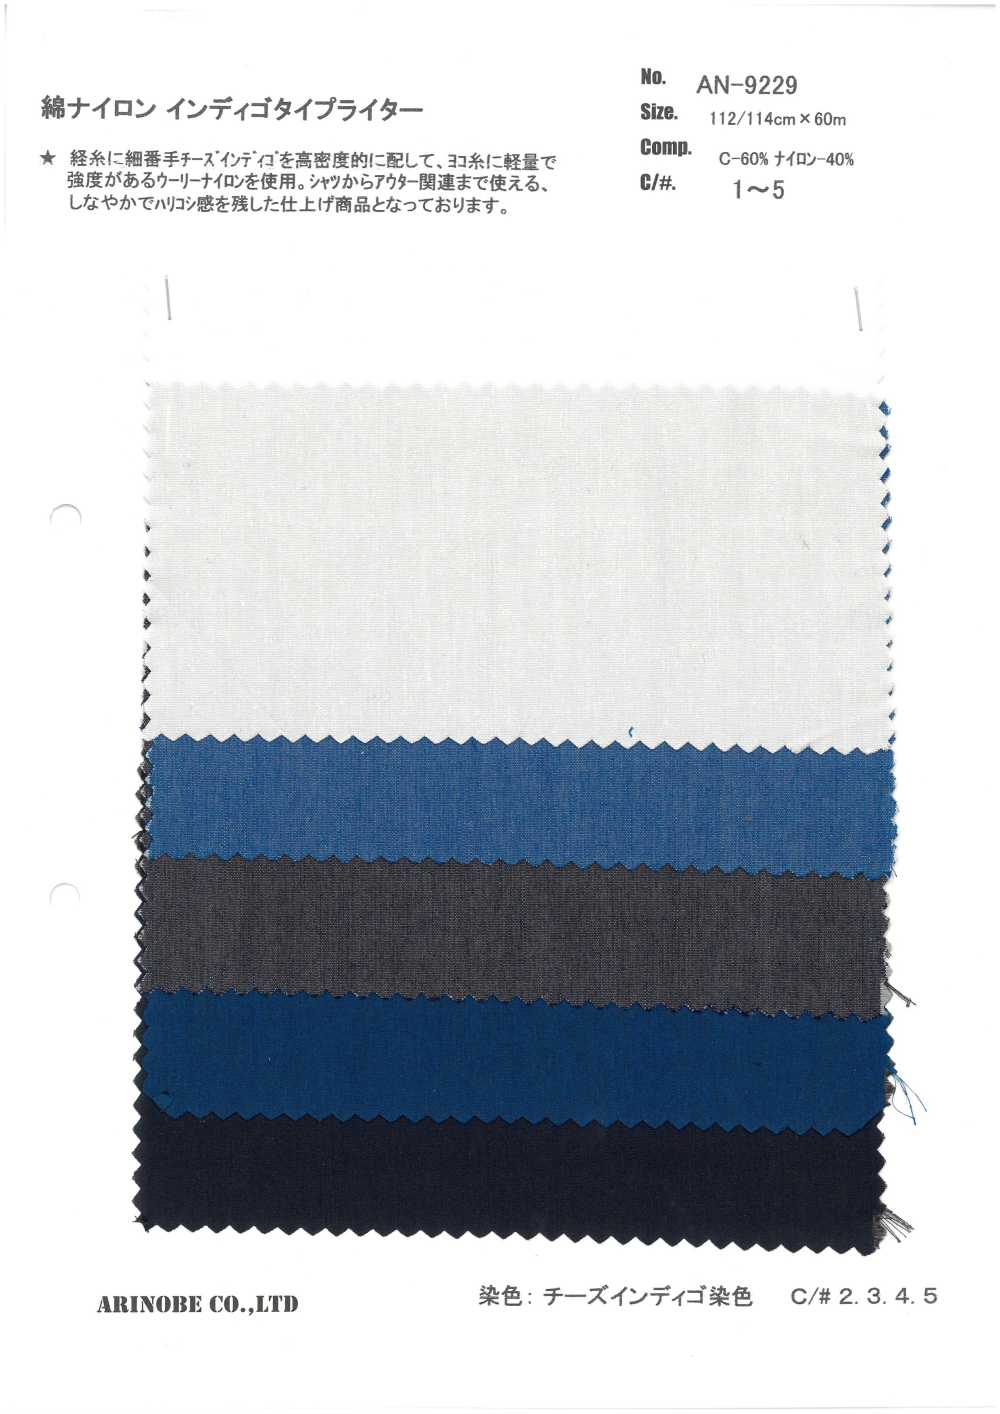 AN-9229 Cotton / Nylon Indigo Typewritter Cloth[Textile / Fabric] ARINOBE CO., LTD.